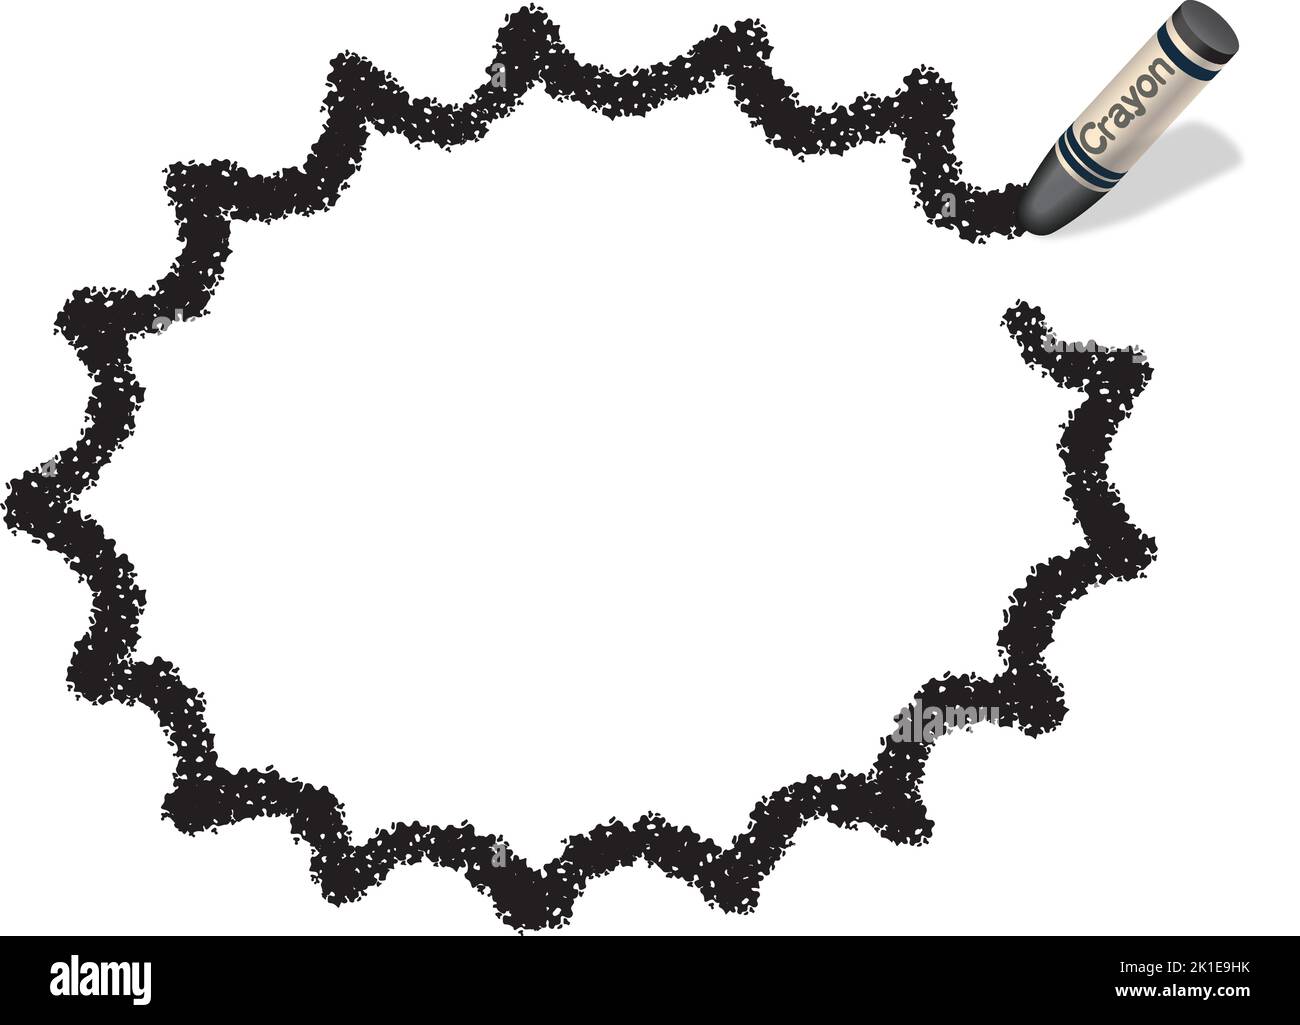 Handgezeichneter Vektor Schwarz gezackt Ellipsel Crayon Texture Frame isoliert auf Weißem Hintergrund. Stock Vektor